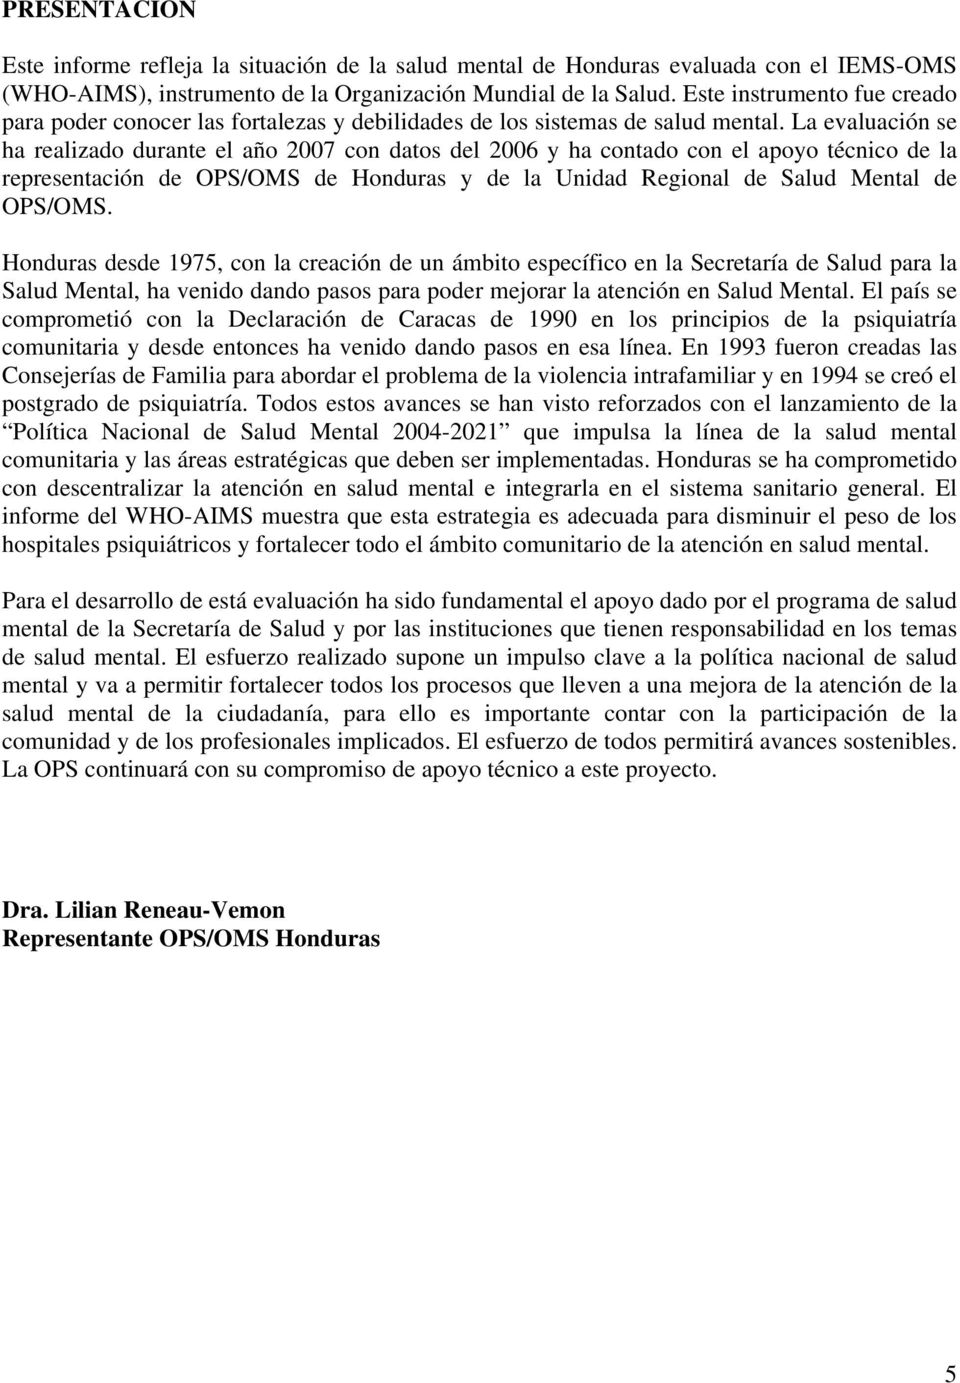 La evaluación se ha realizado durante el año 2007 con datos del 2006 y ha contado con el apoyo técnico de la representación de OPS/OMS de Honduras y de la Unidad Regional de Salud Mental de OPS/OMS.